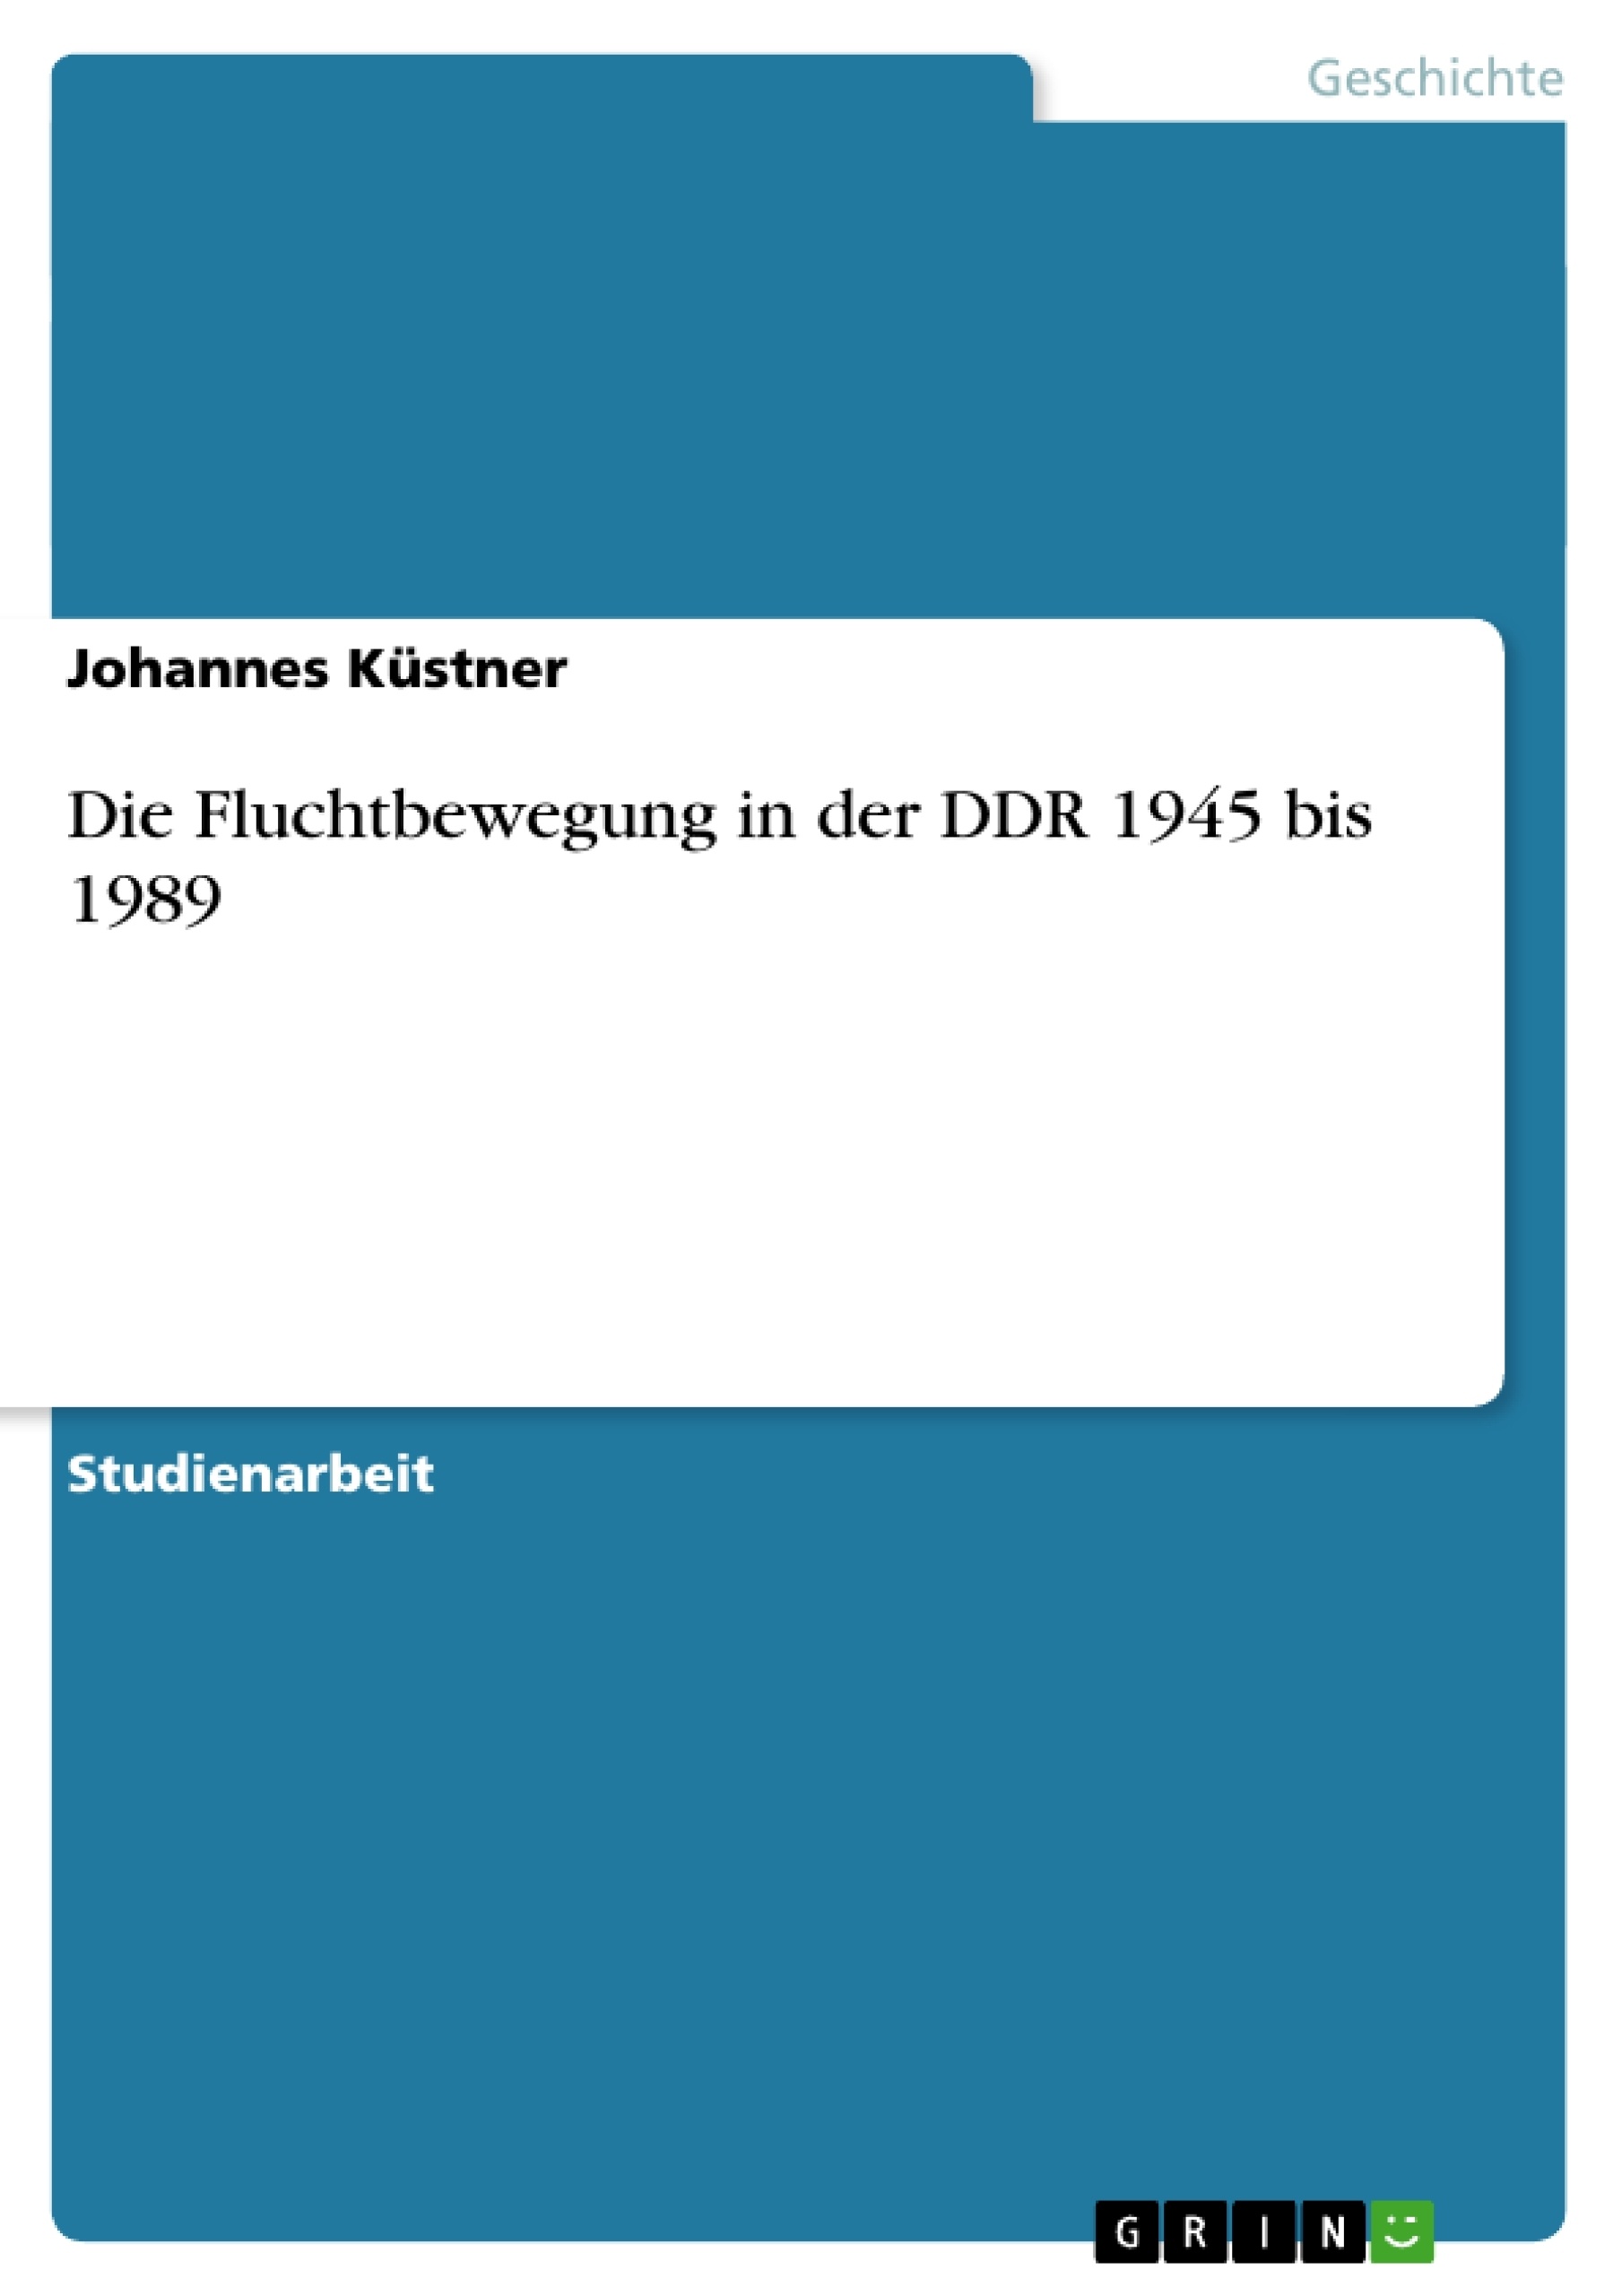 Title: Die Fluchtbewegung in der DDR 1945 bis 1989